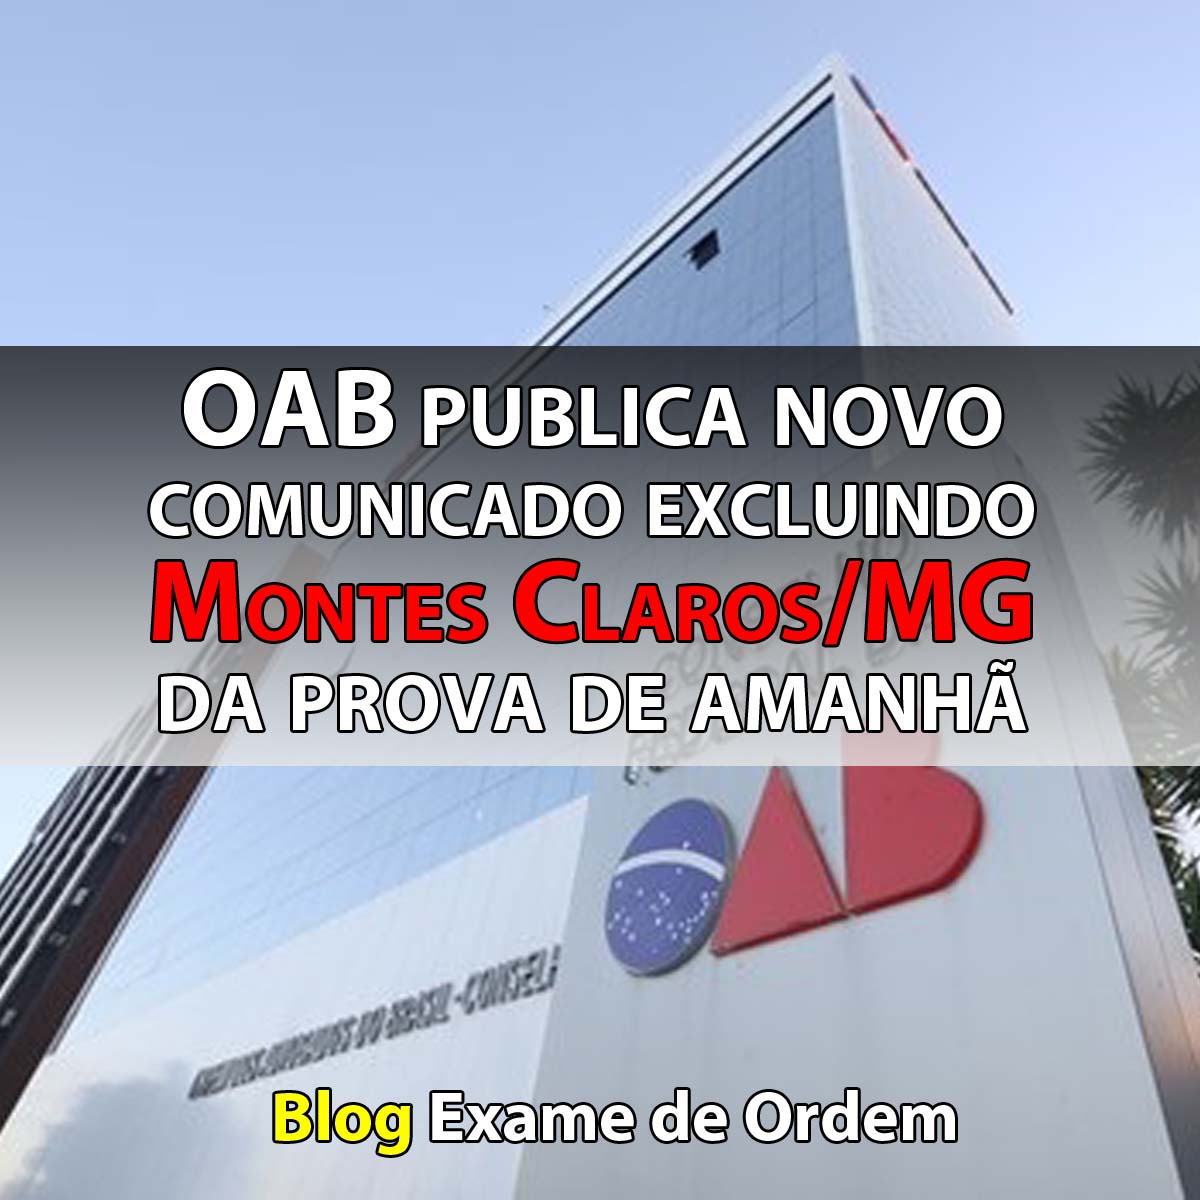 OAB publica novo comunicado excluindo Montes Claros/MG da prova de amanhã